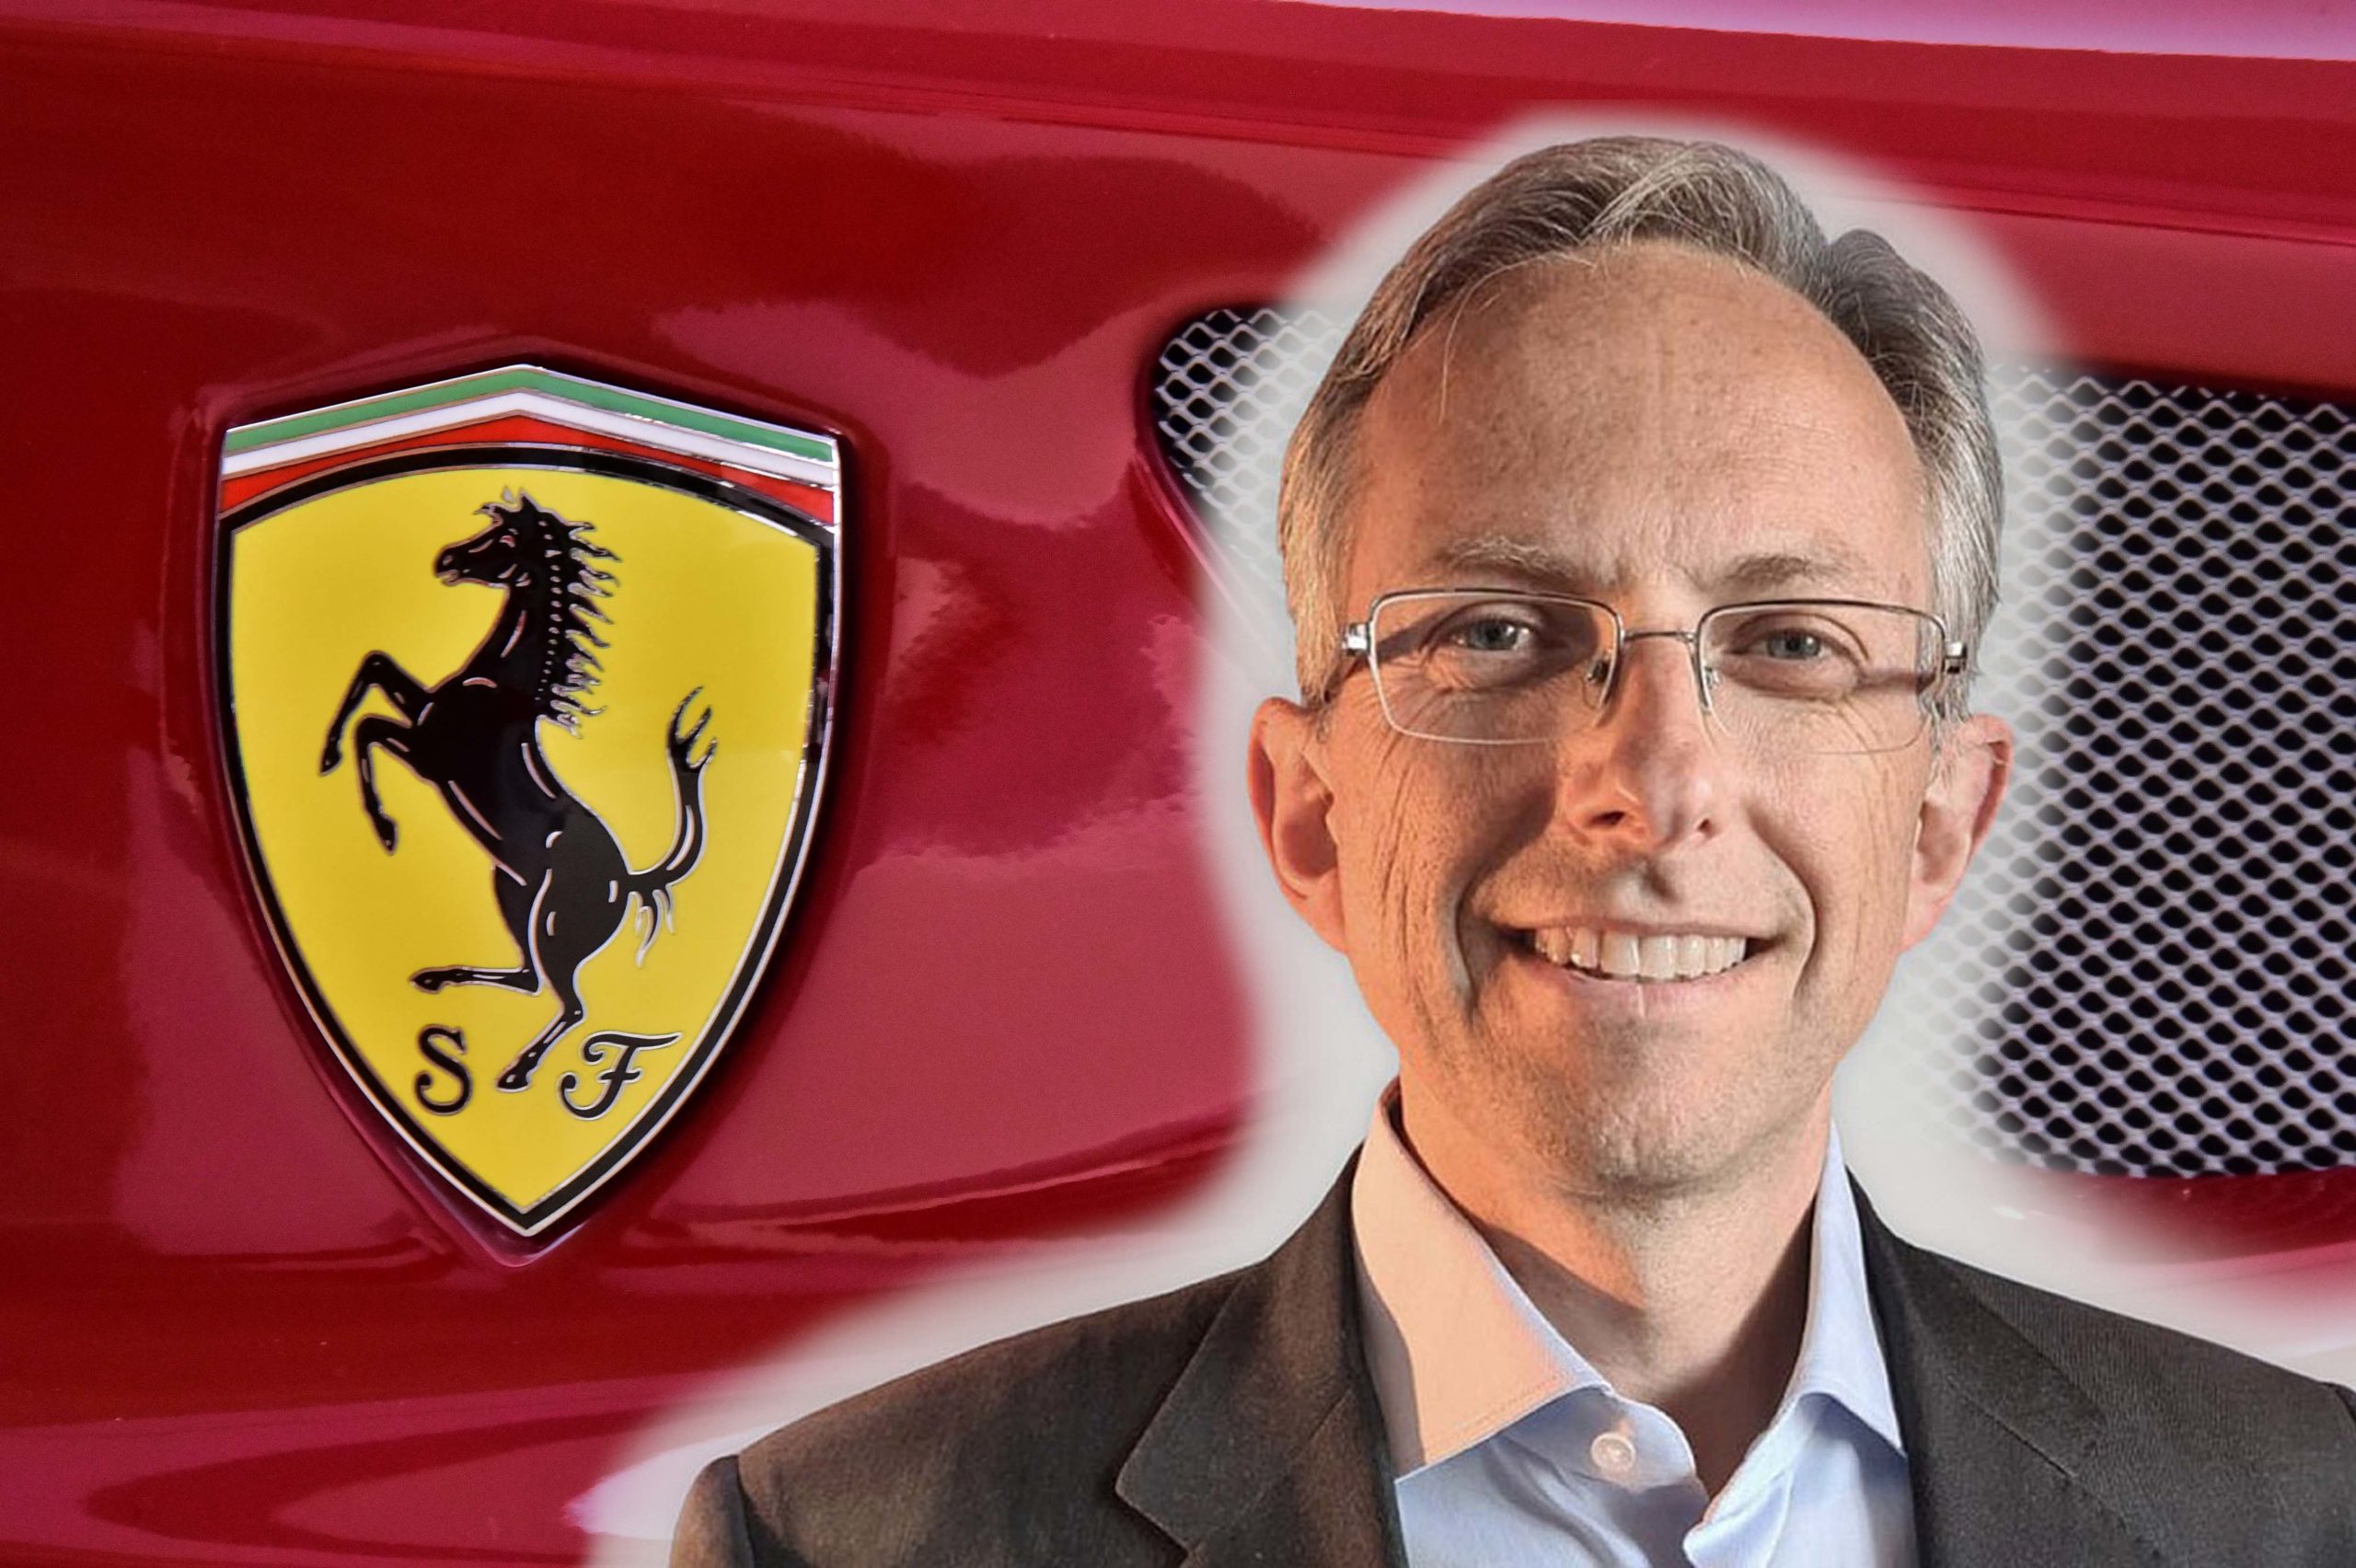 Ferrari Kërkon Partneritete Jo Bashkime Thotë Drejtuesi Mendimi